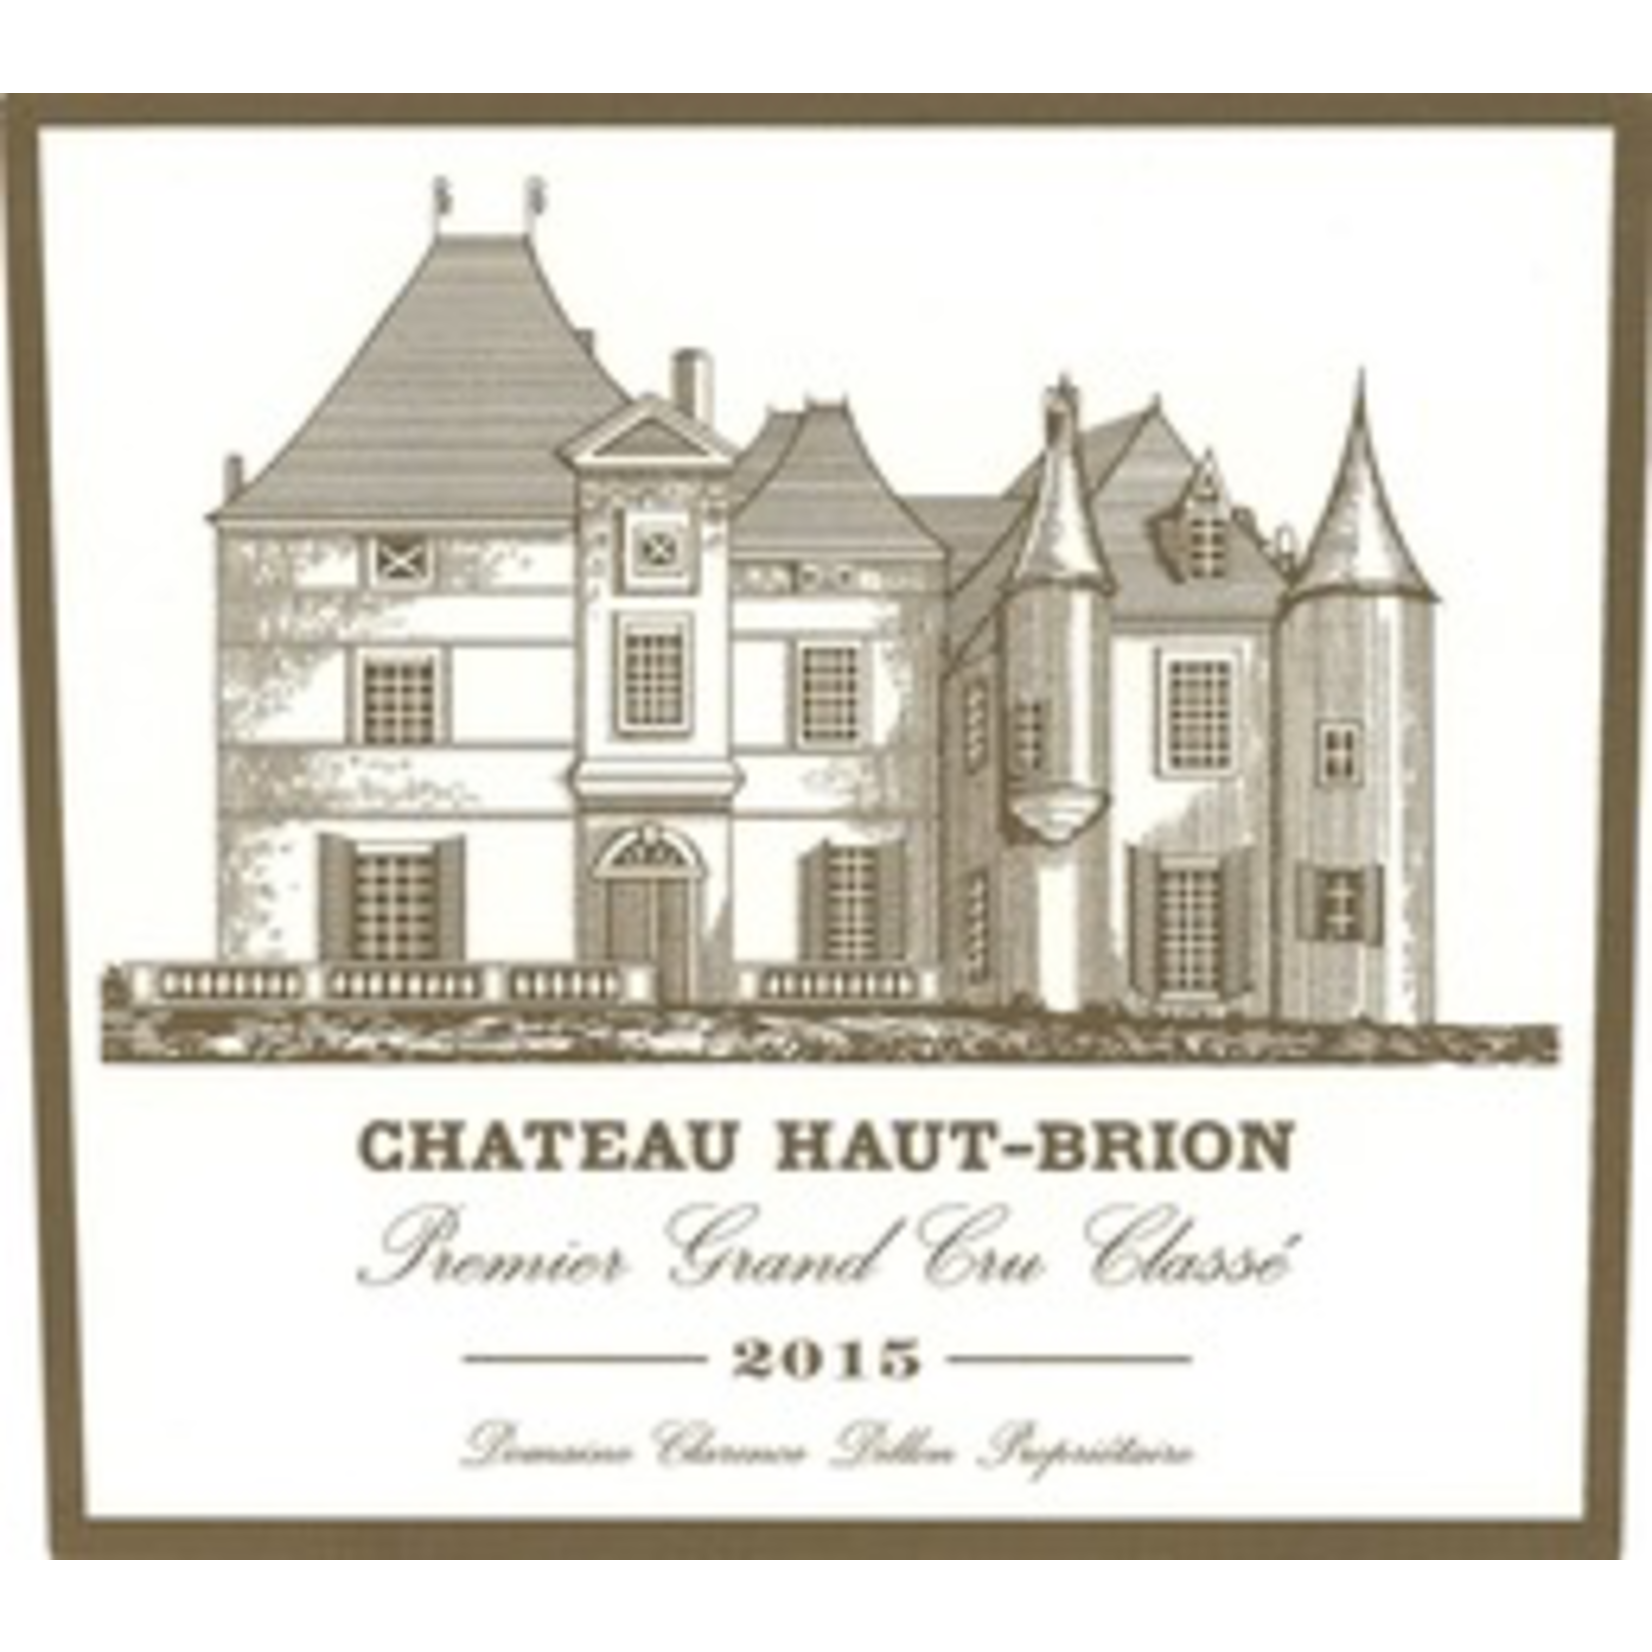 Wine Chateau Haut Brion 2015